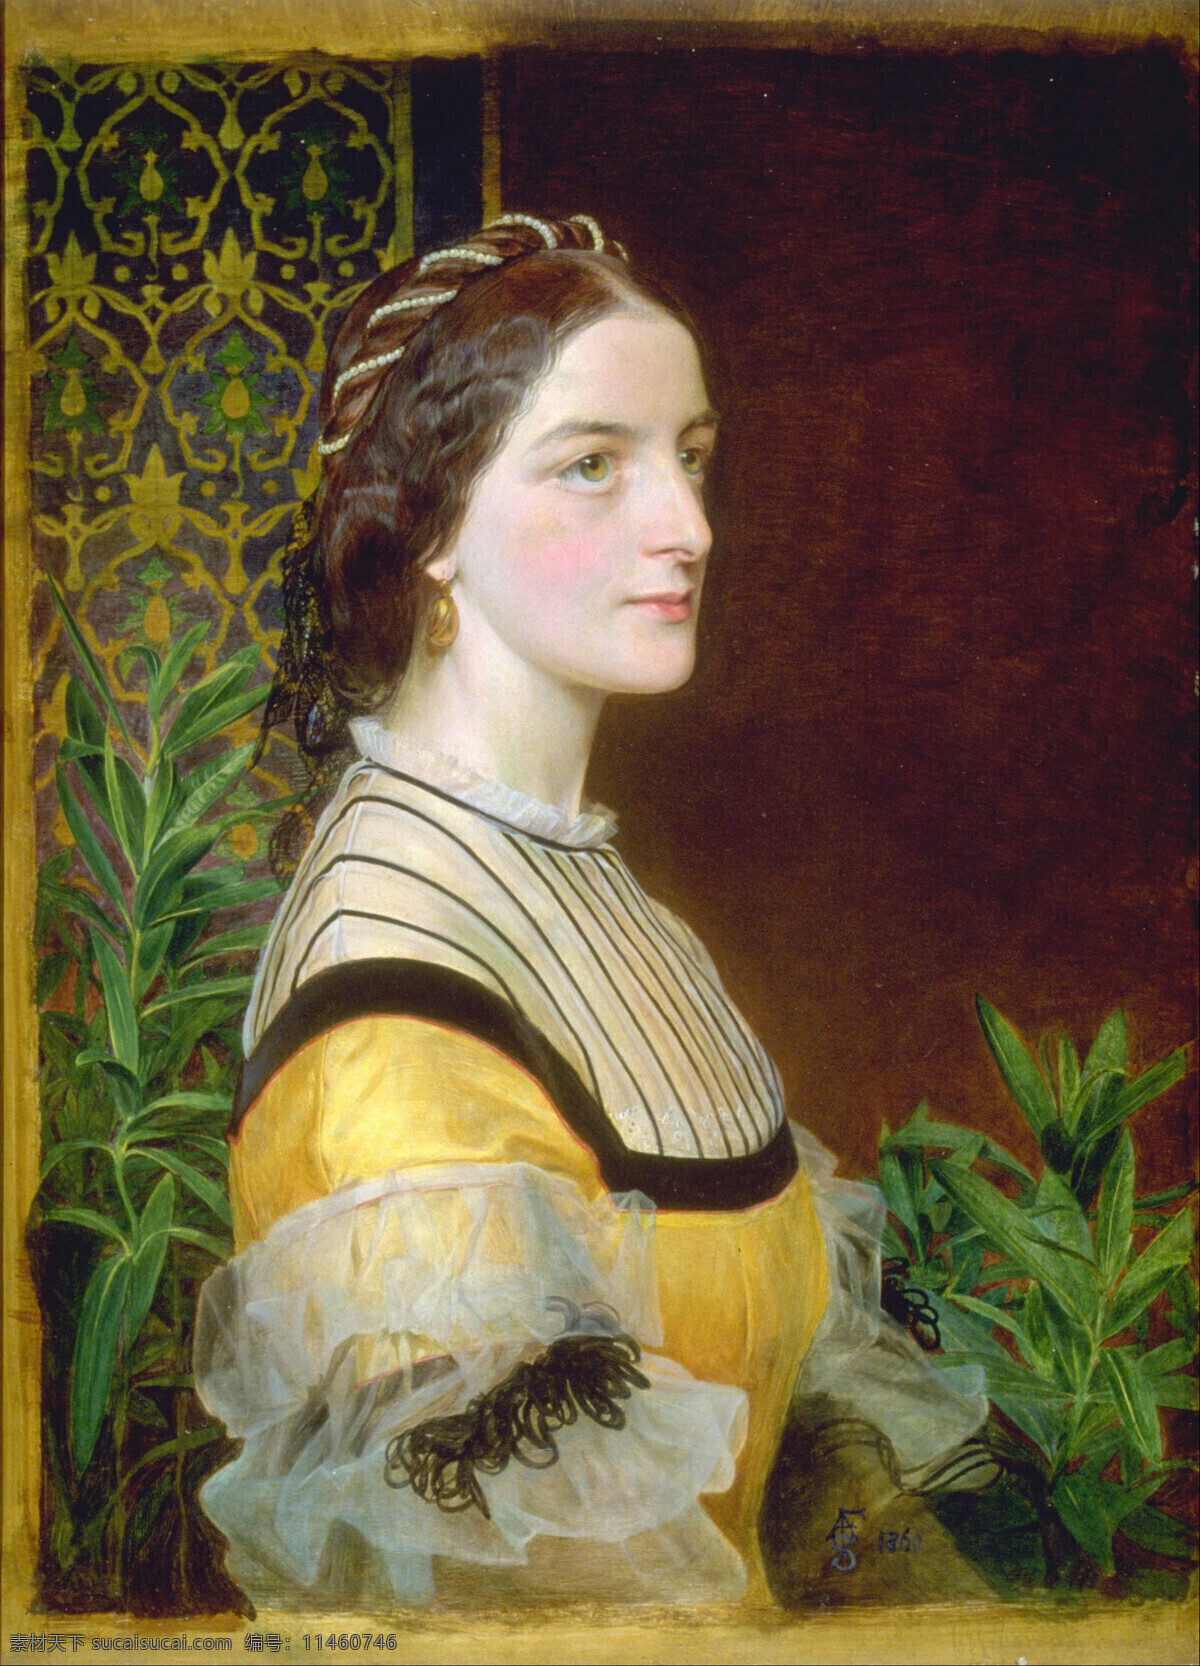 安妮 西姆斯 里夫 夫人 弗雷德里克 桑 迪斯 作品 英国画家 布克 斯克 诺福克 地区 贵妇人 肖像 19世纪油画 油画 绘画书法 文化艺术